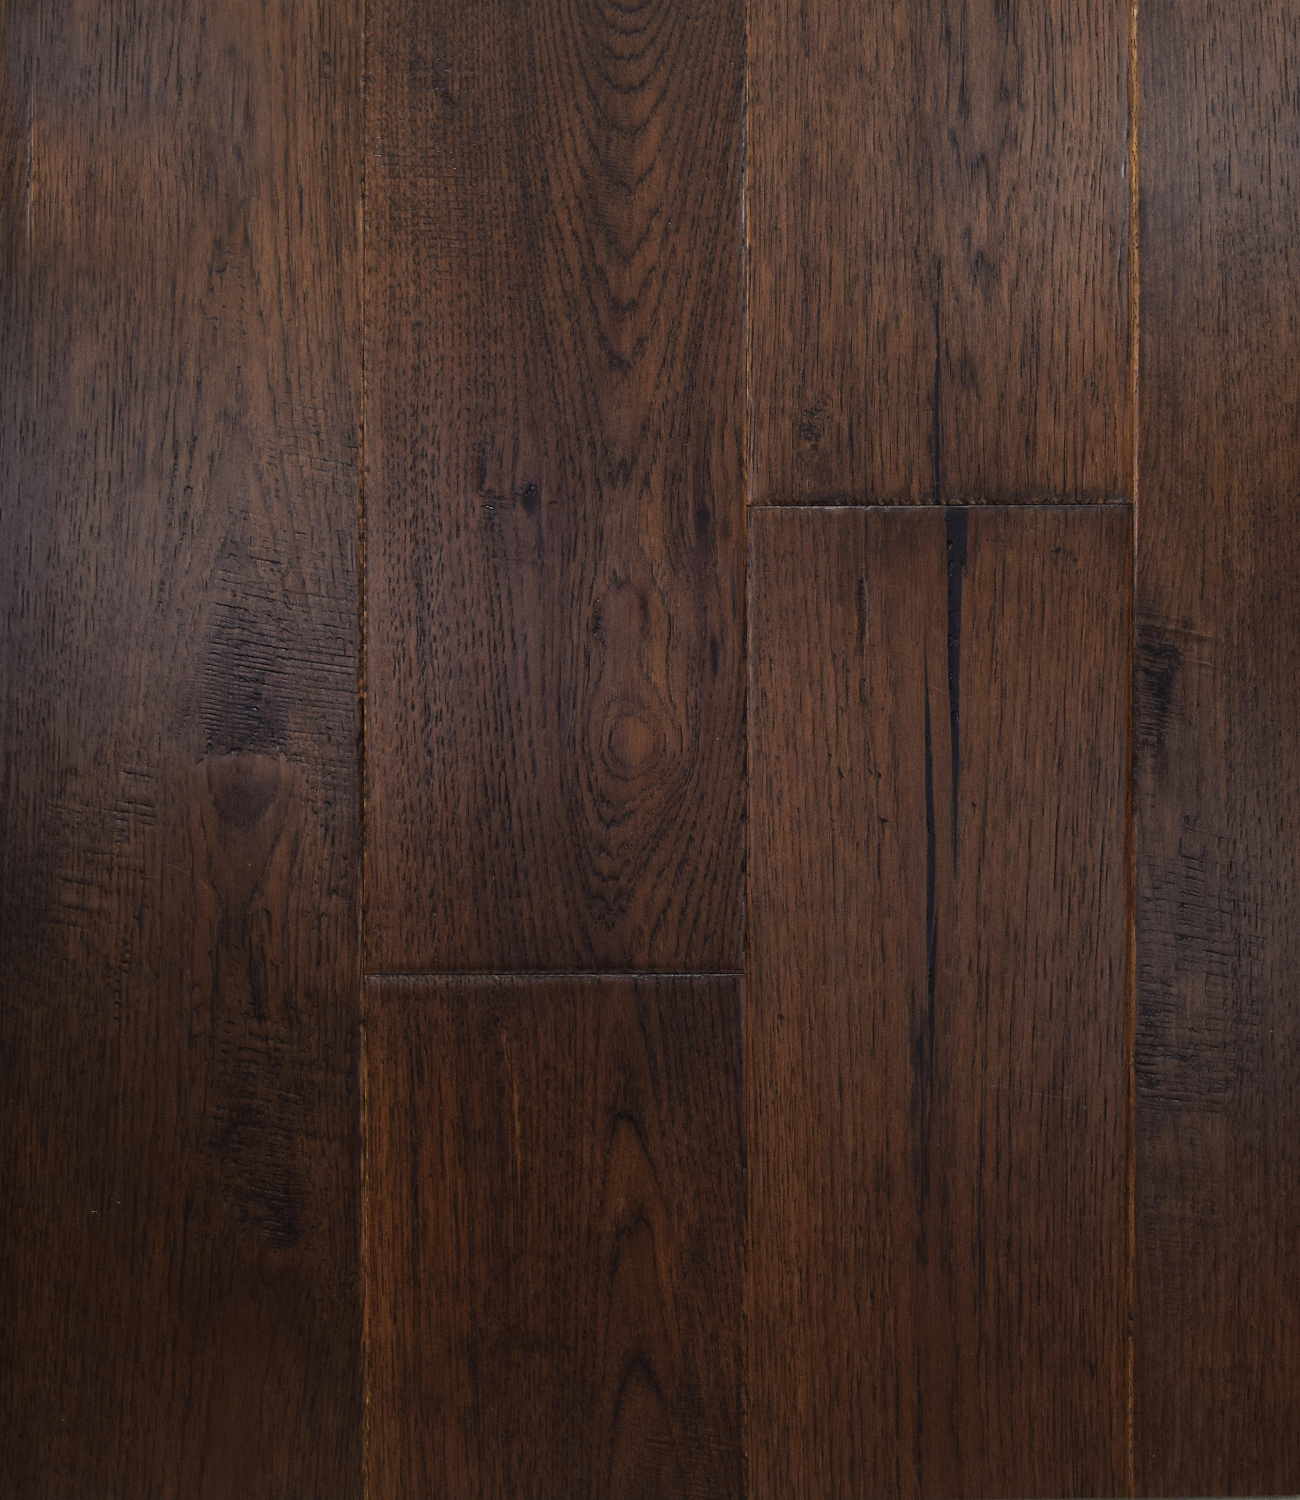 Dark Hardwood Floor Does It Make Your Room Seem Smaller Arte